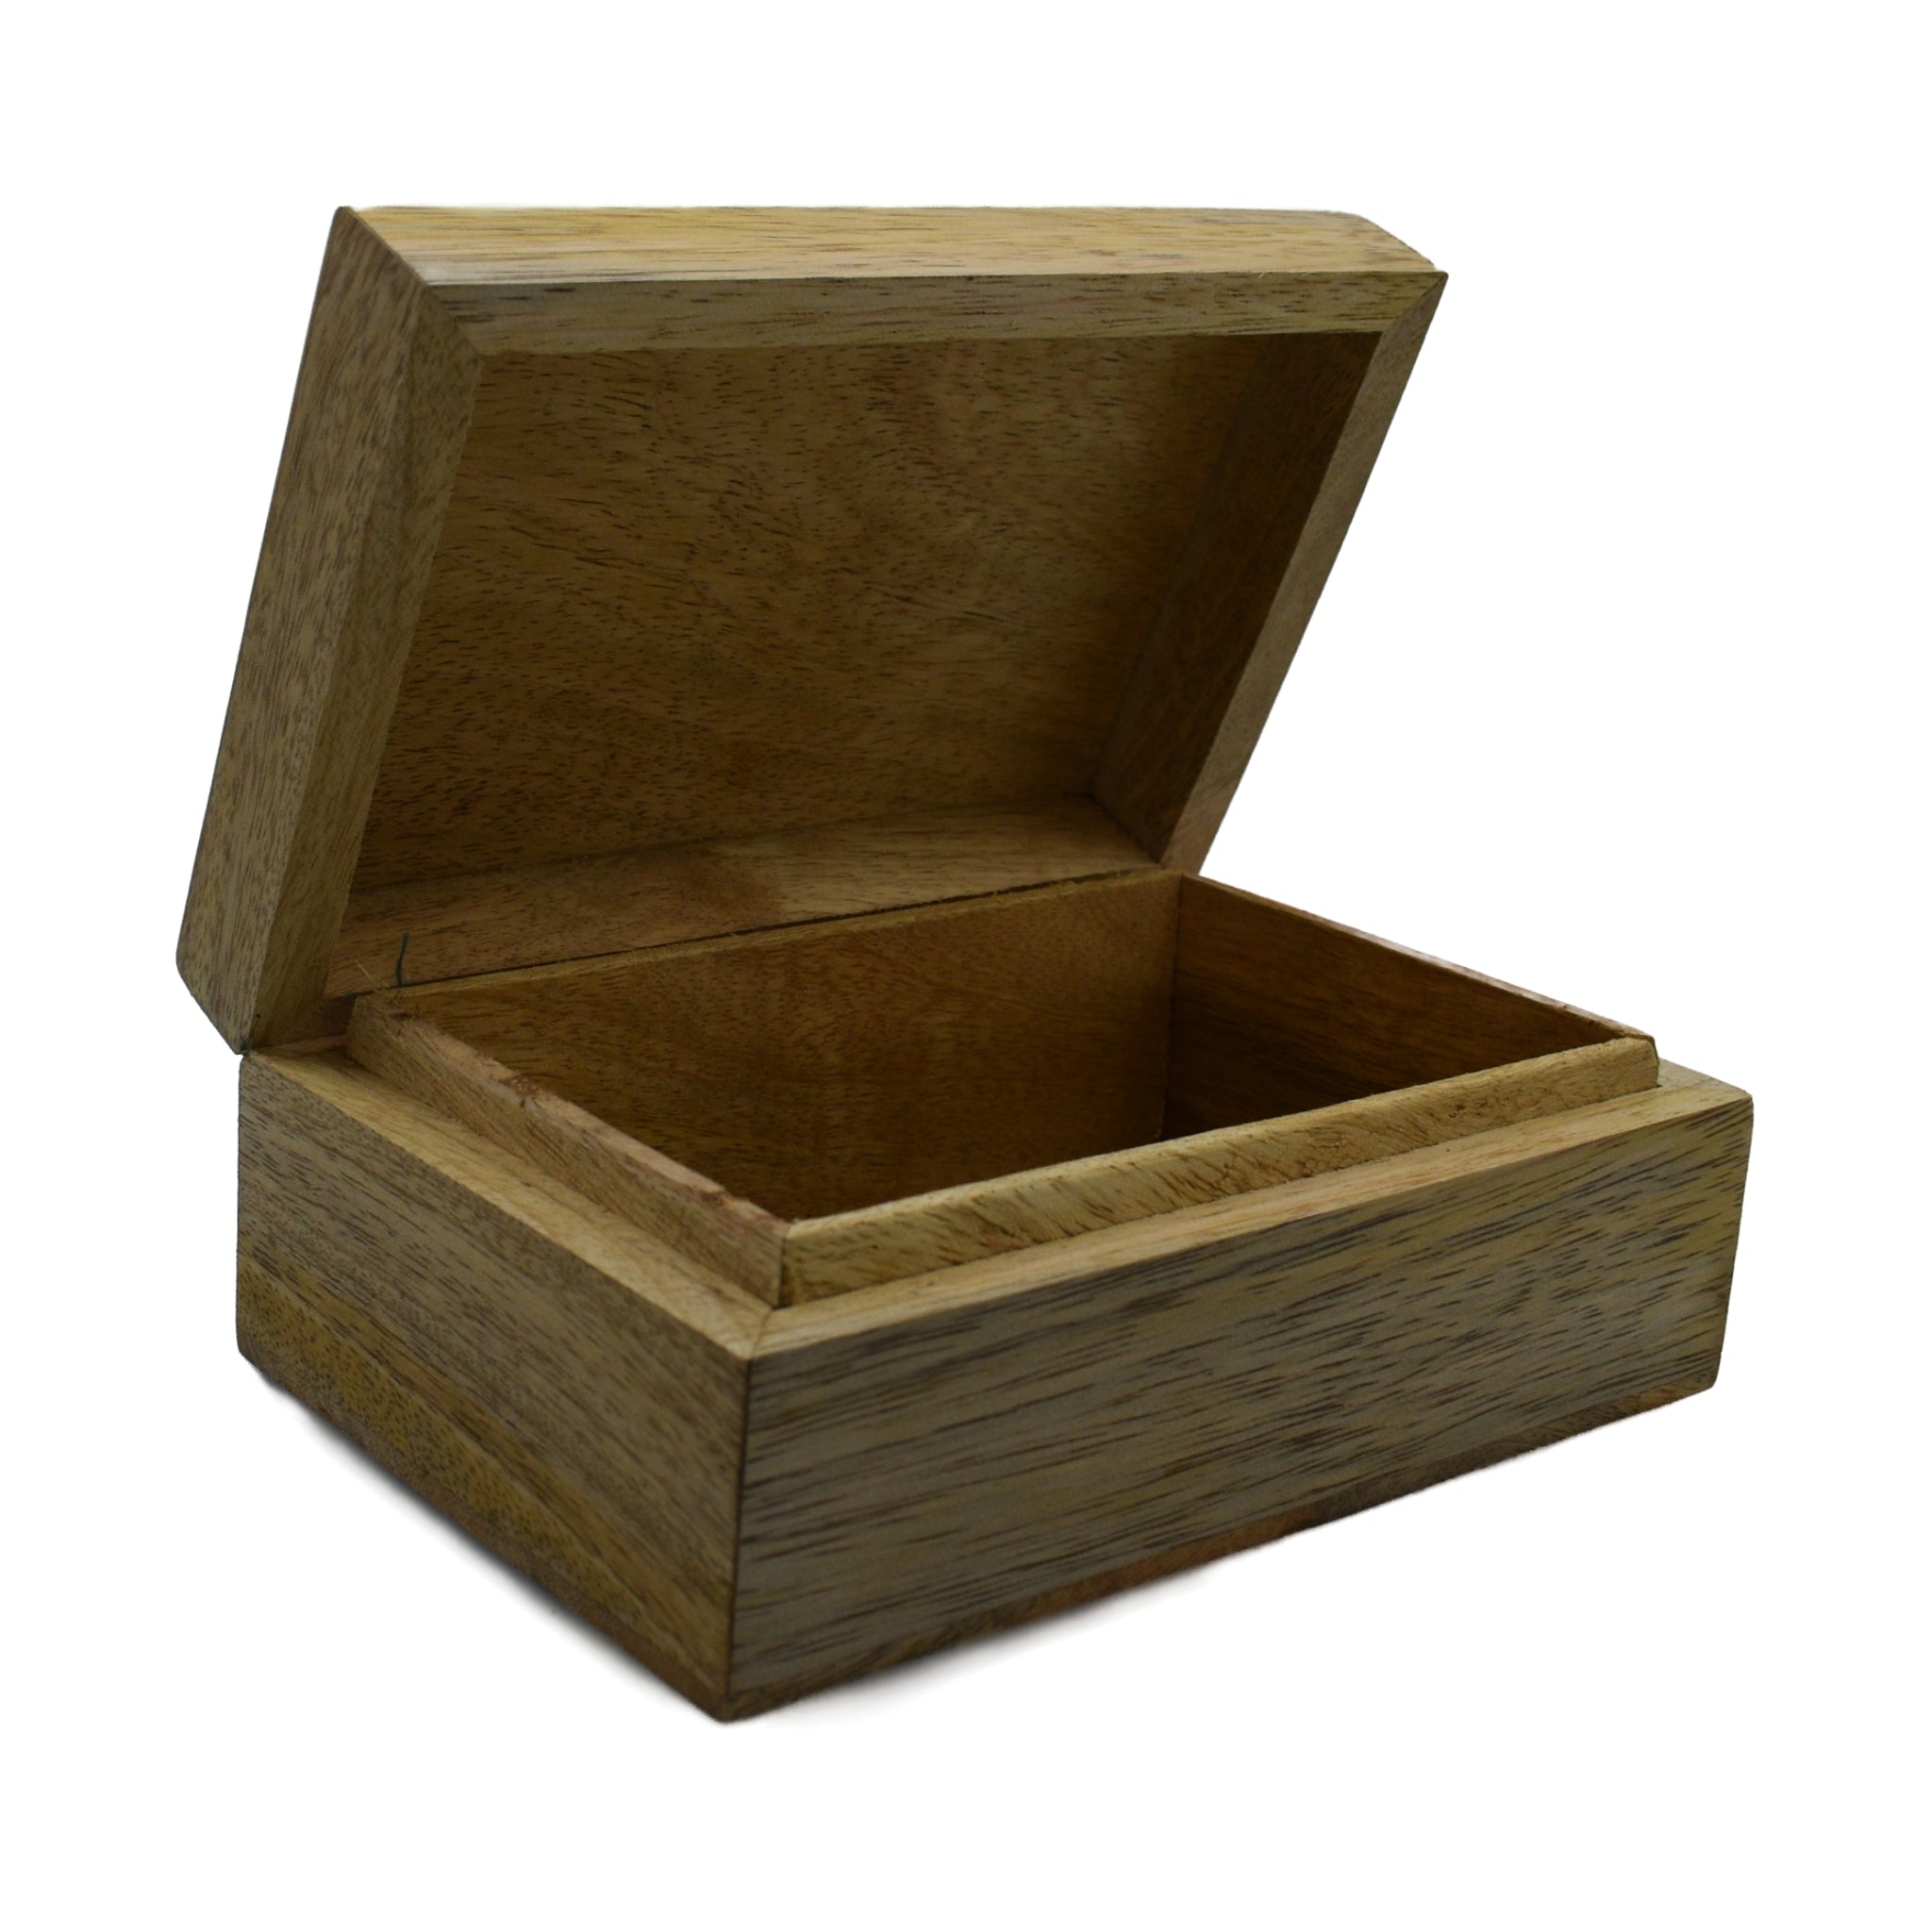 Open box plain natural wood color 